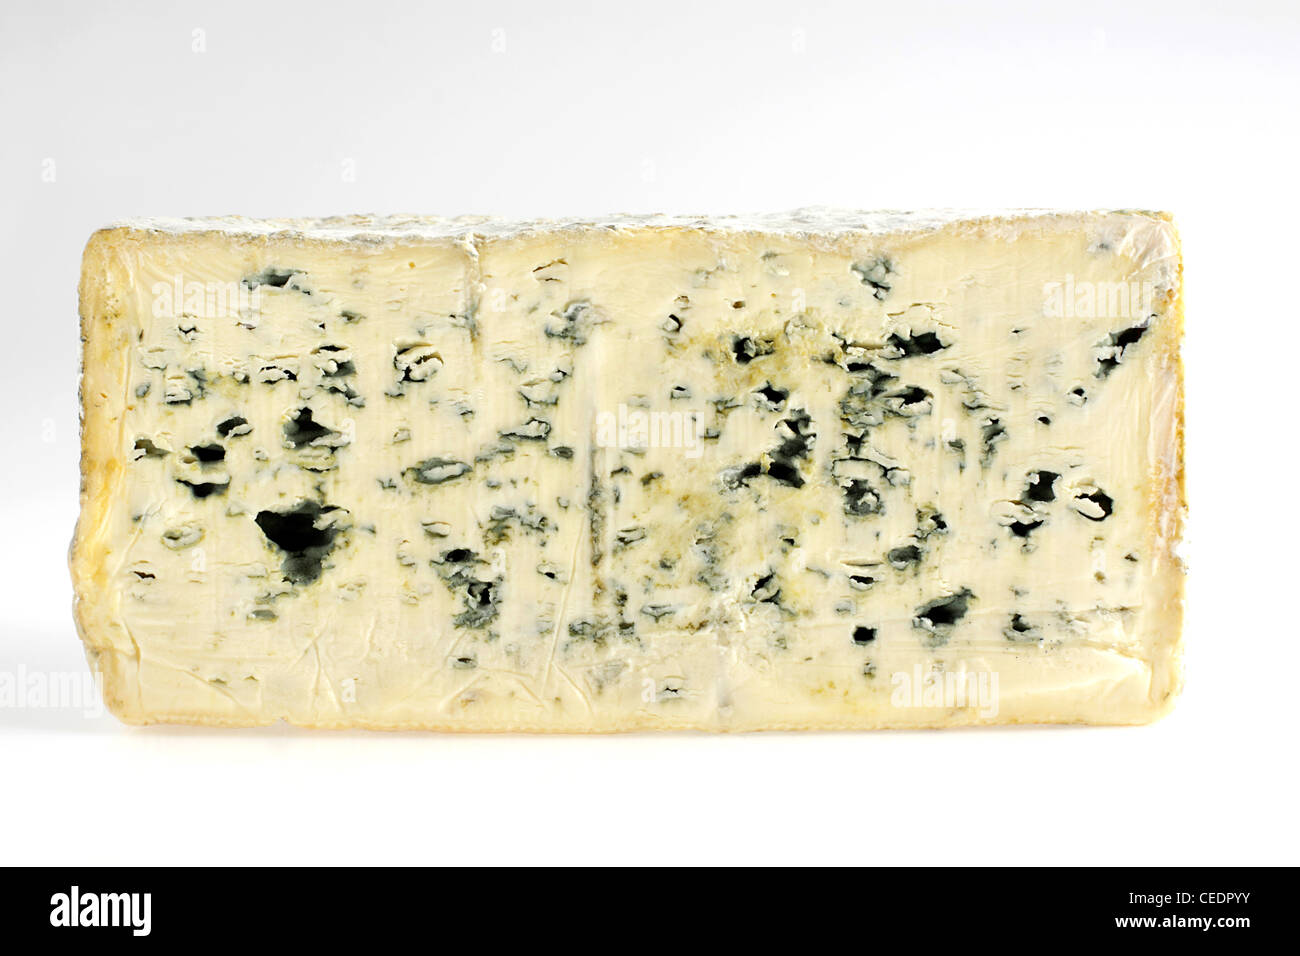 Fette bleu d'Auvergne formaggio di latte vaccino Foto Stock